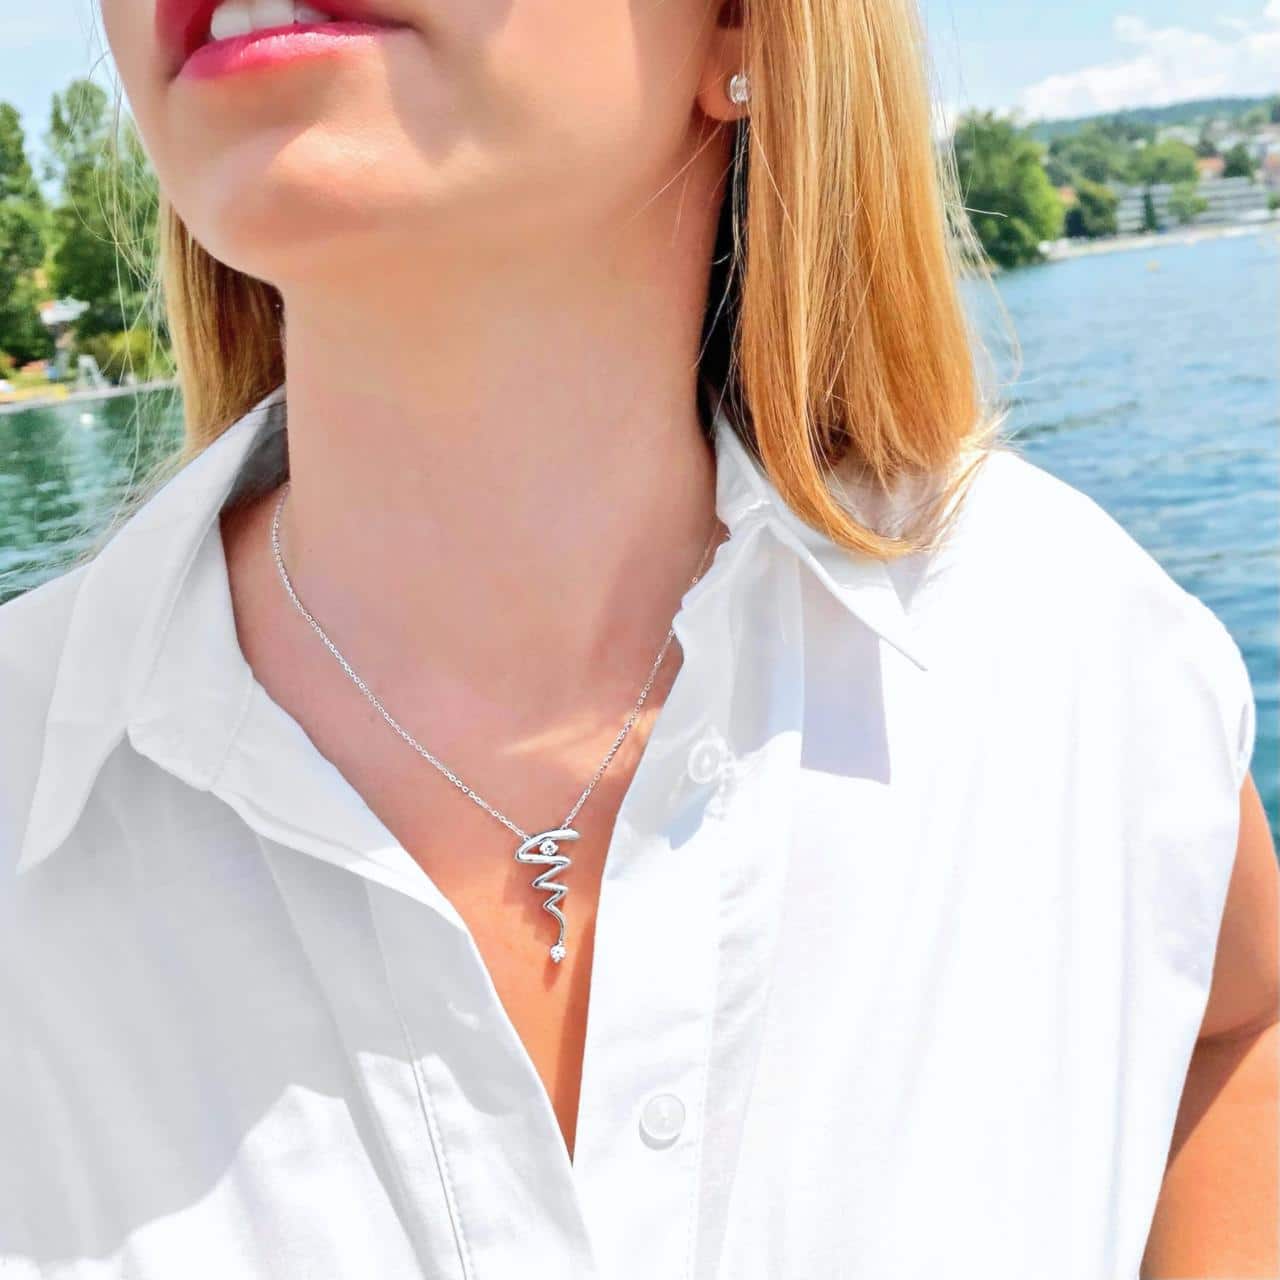 Anker-Halskette mit ausgefallenem Anhänger  beides aus Sterling Silber rhodiniertzum weissen Blusenkleid getragen vor Eden Au Lac in Zürich 